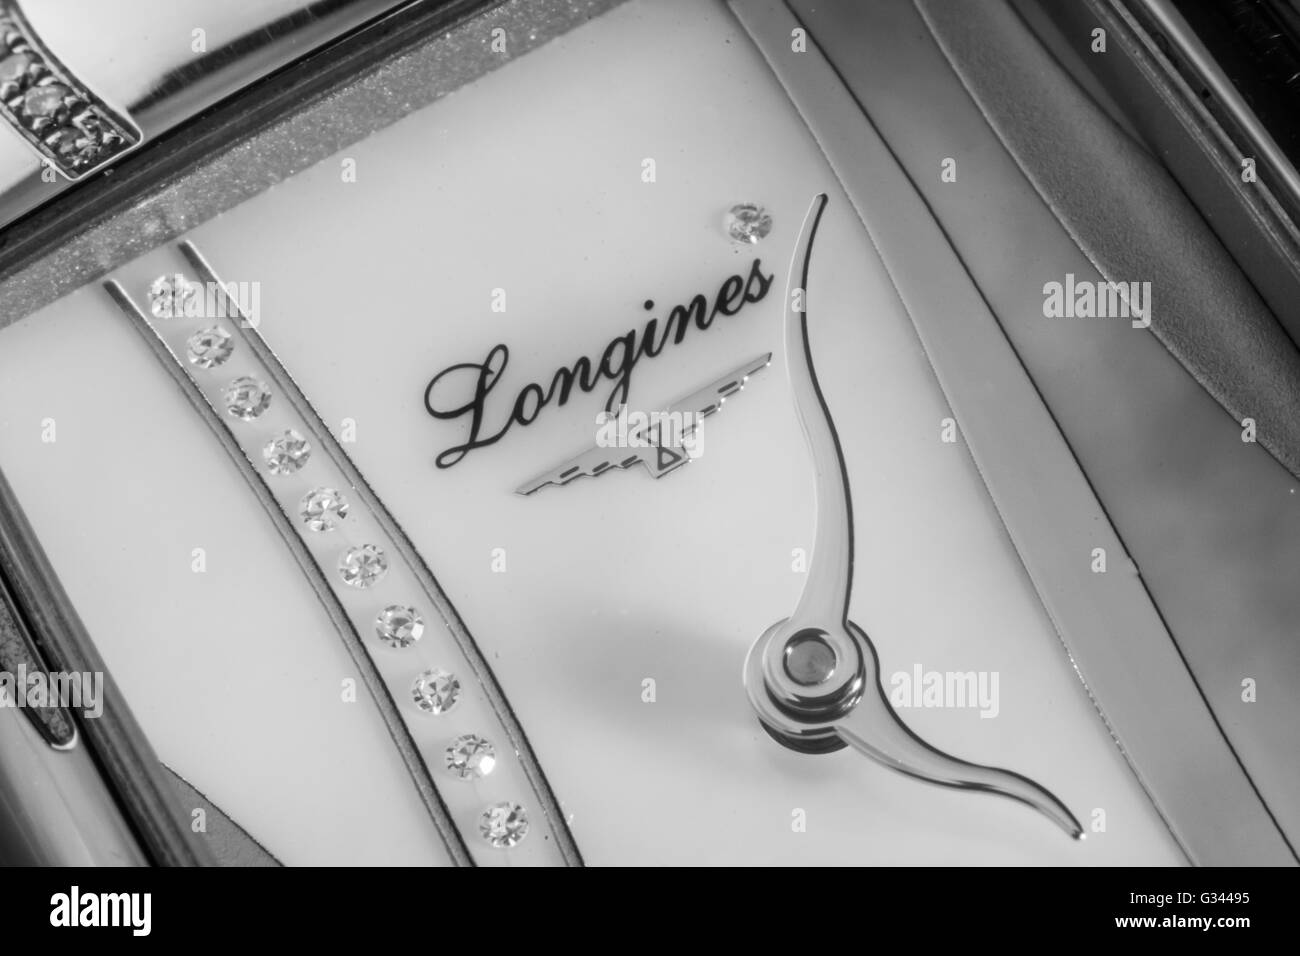 Longines ladies luxury watch jewellery Stock Photo